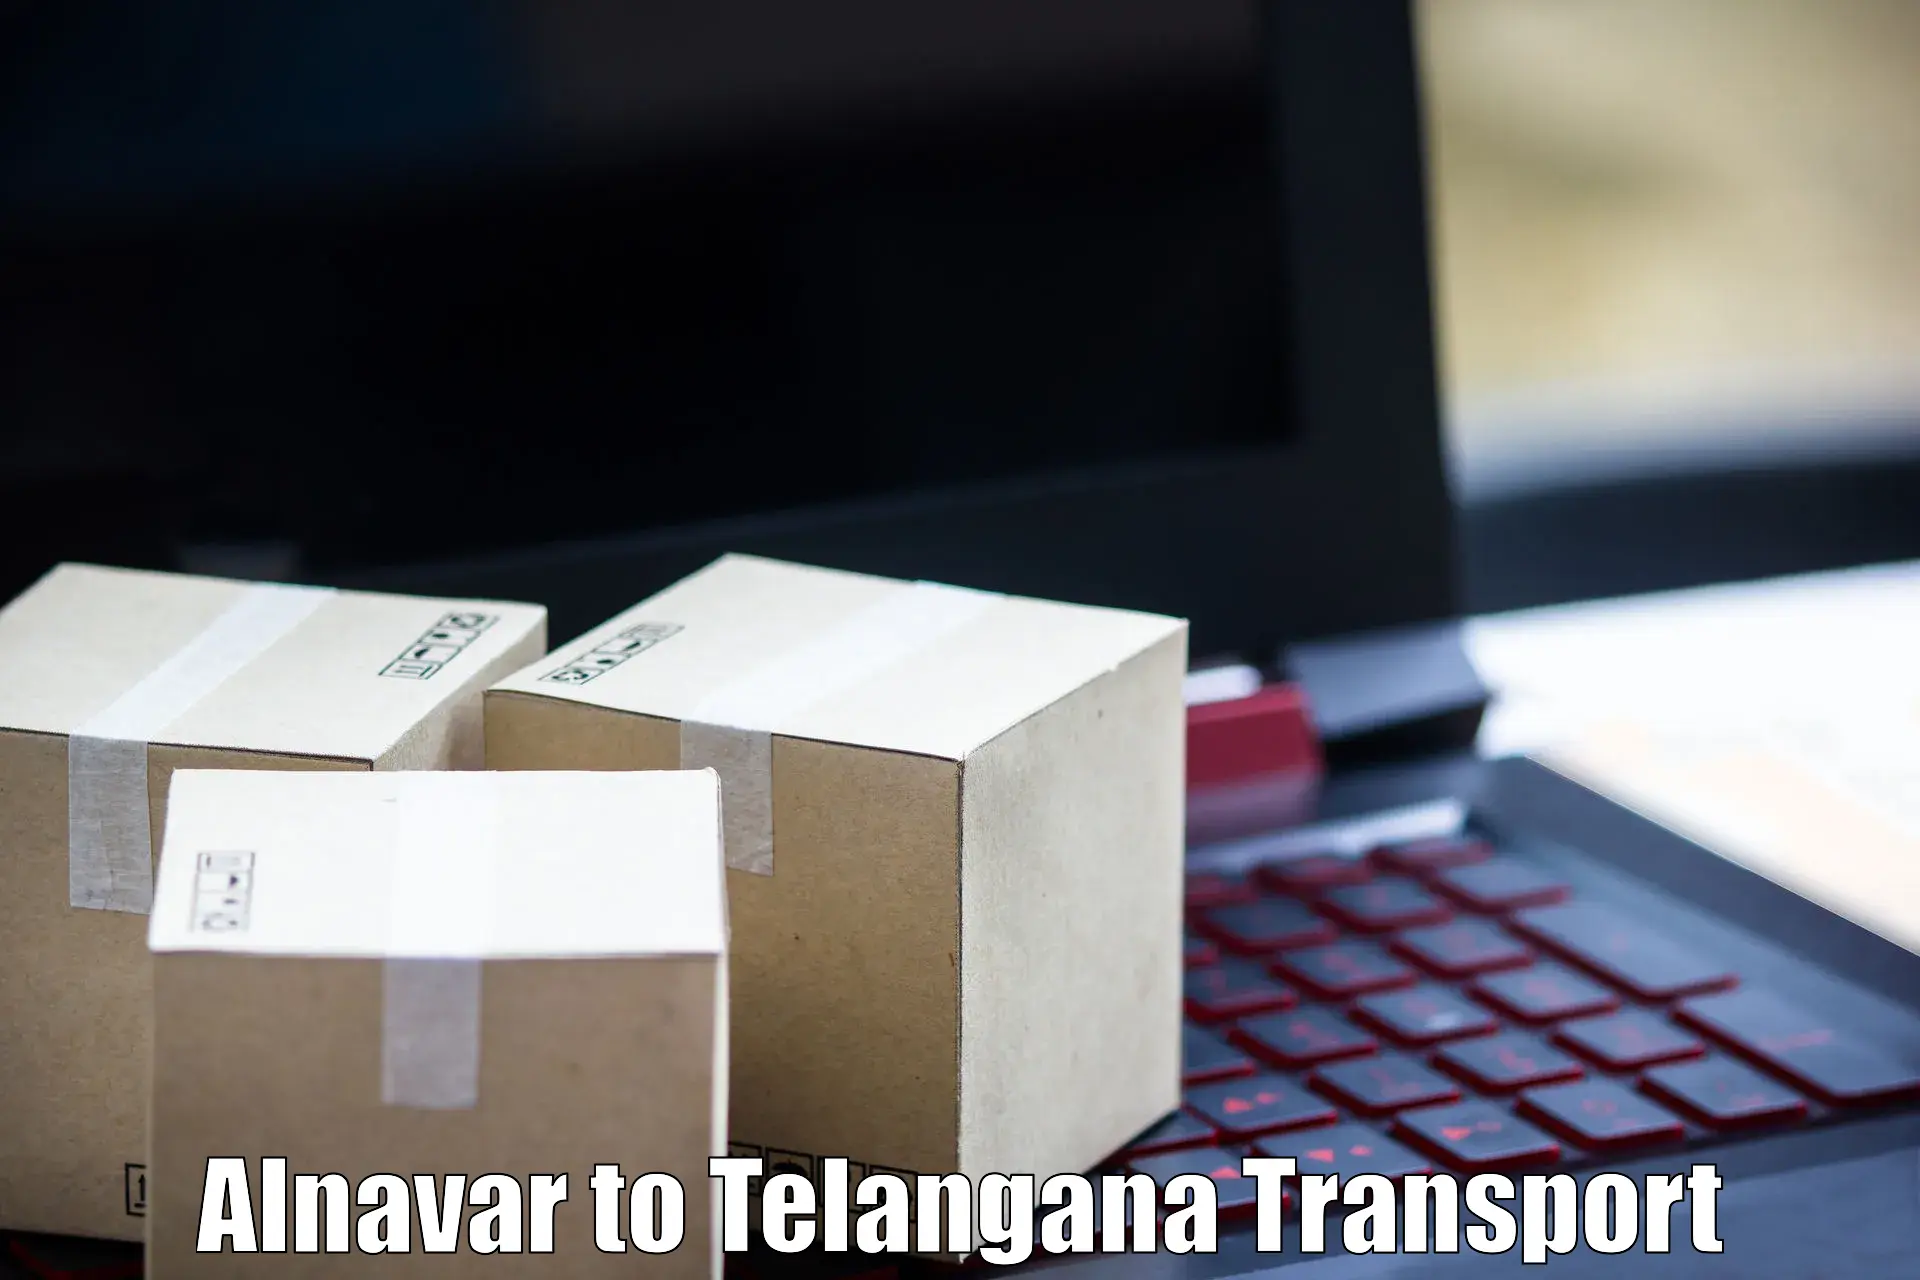 Online transport booking Alnavar to Sadashivpet